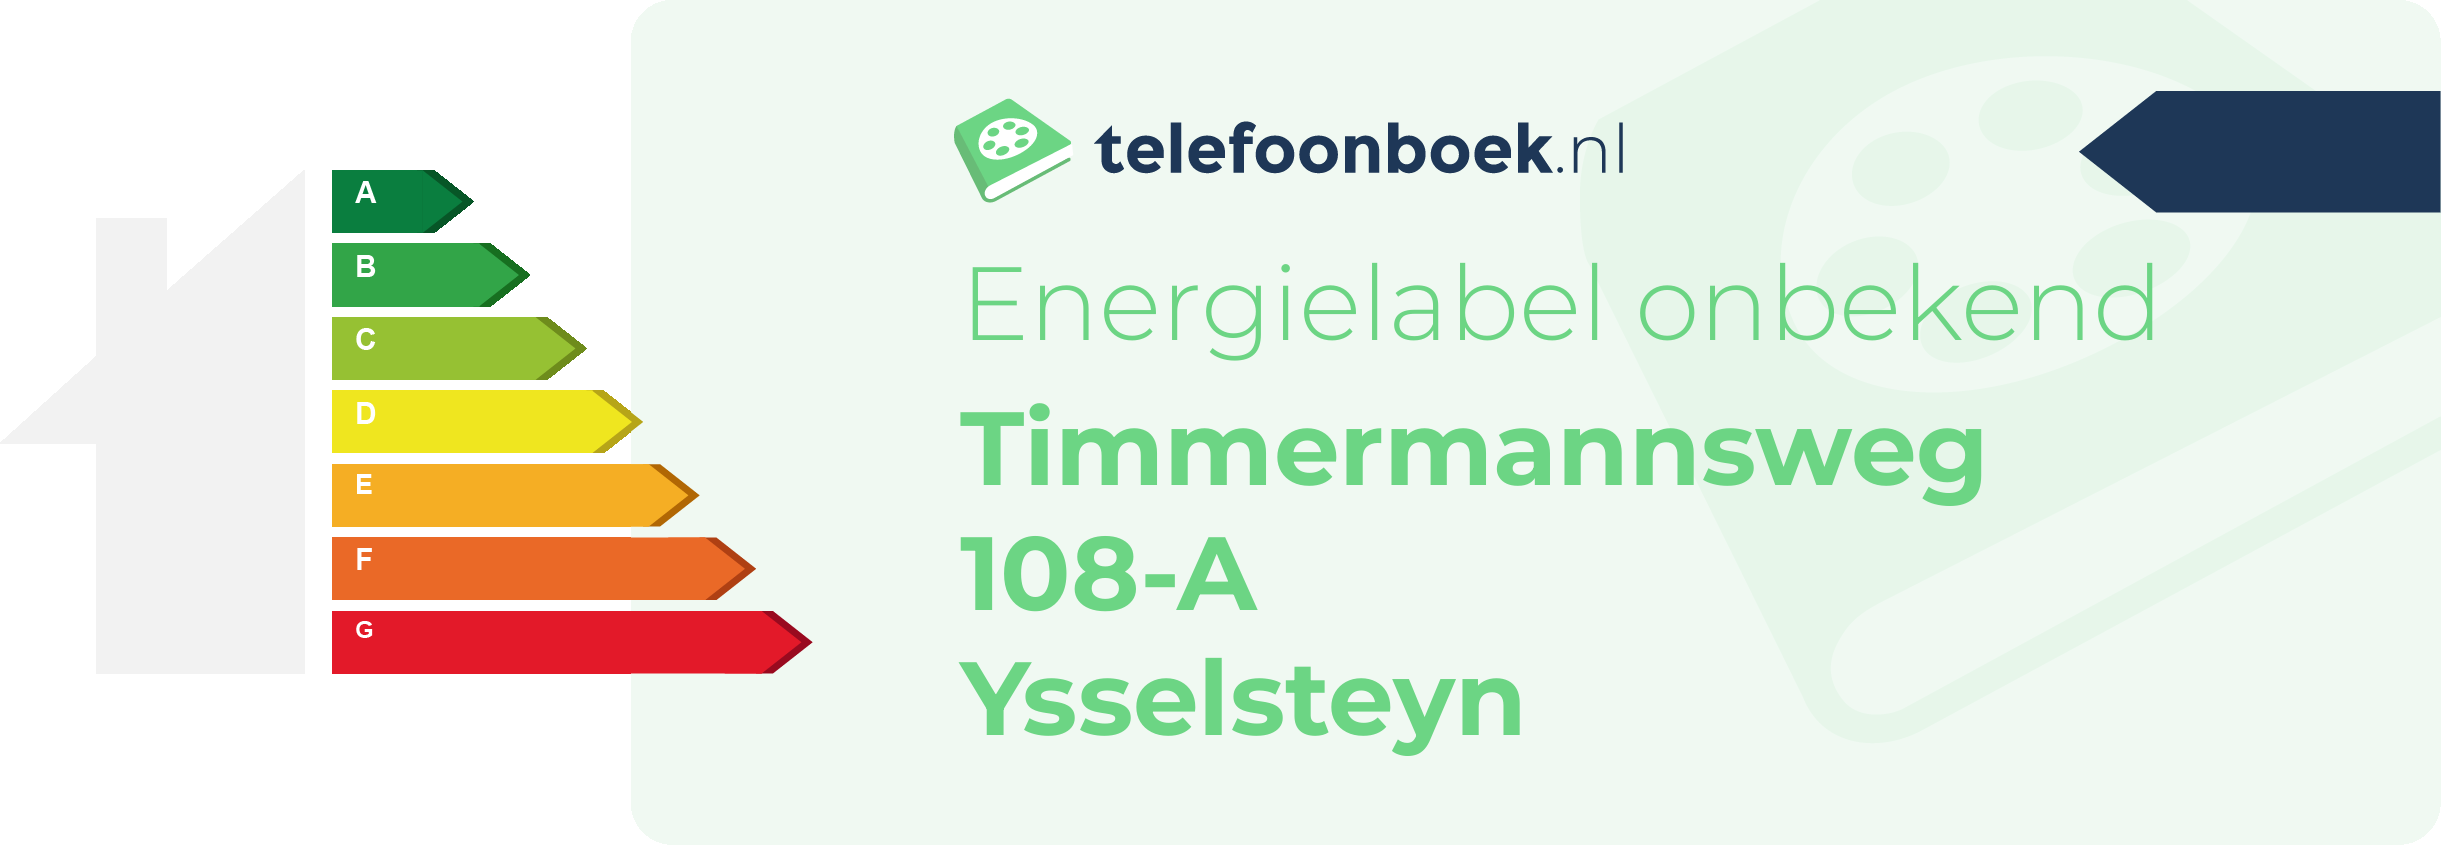 Energielabel Timmermannsweg 108-A Ysselsteyn